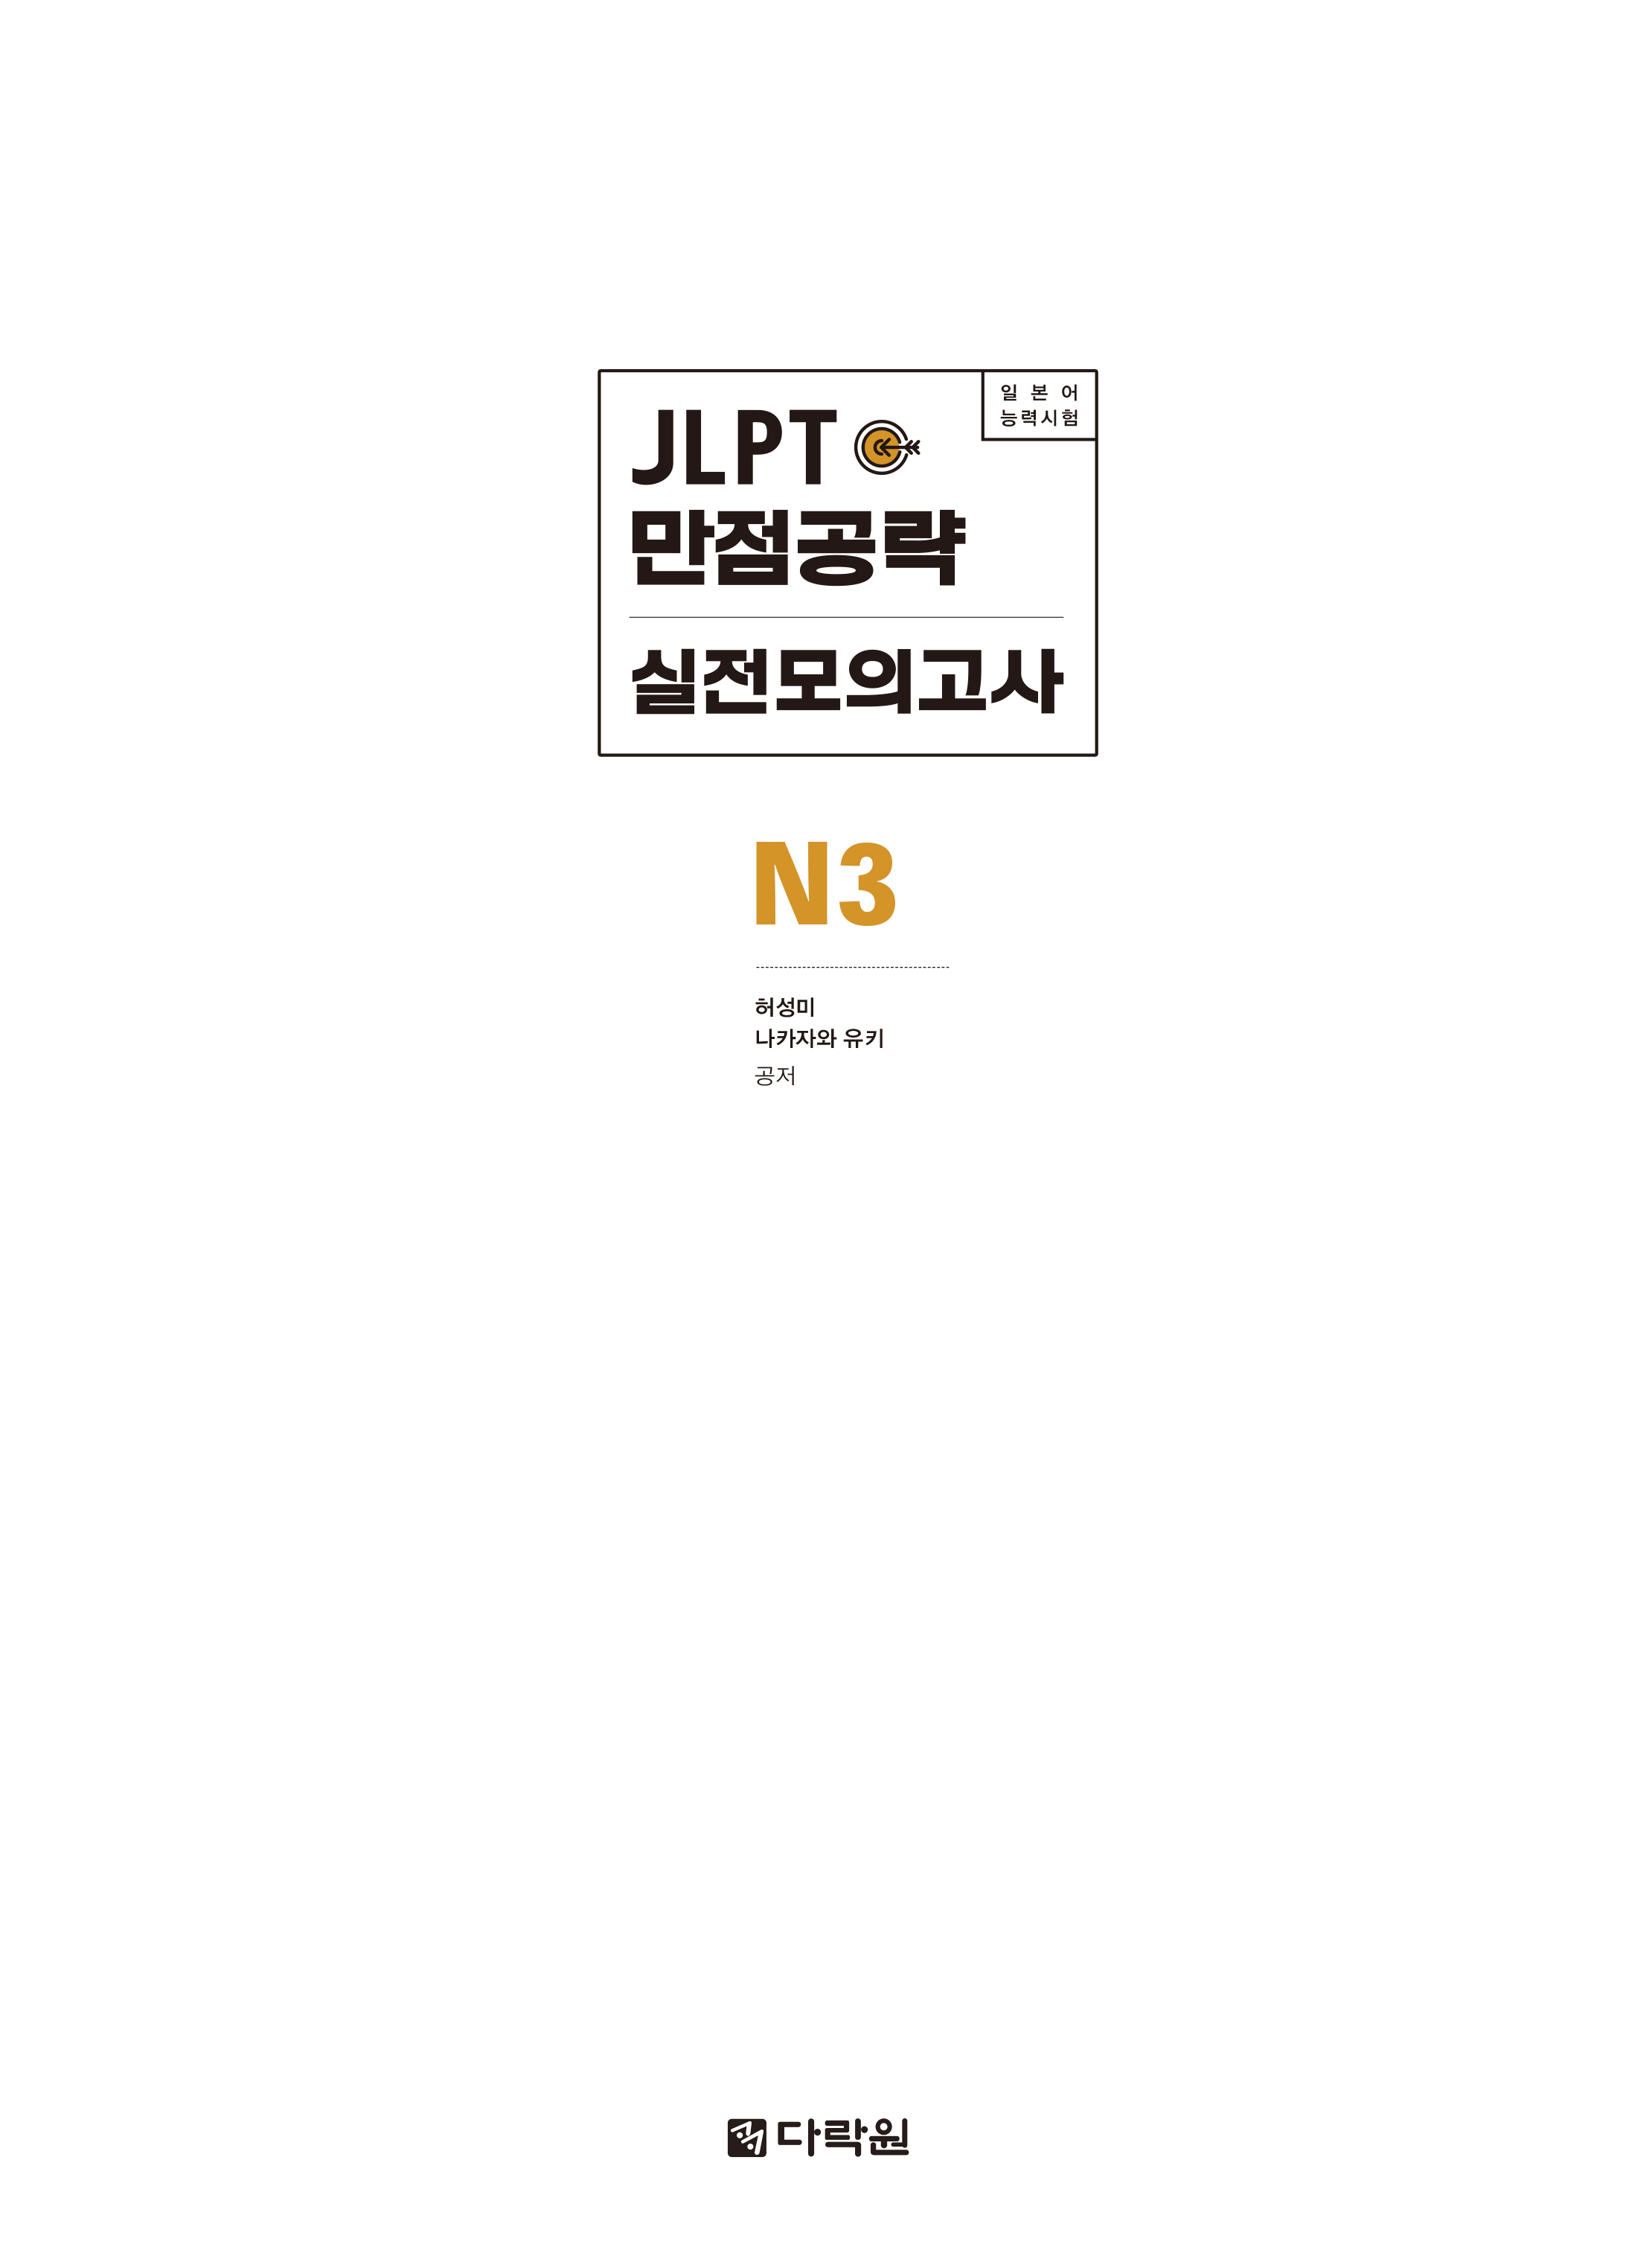 JLPT (일본어능력시험) 만점공략 실전모의고사 N3